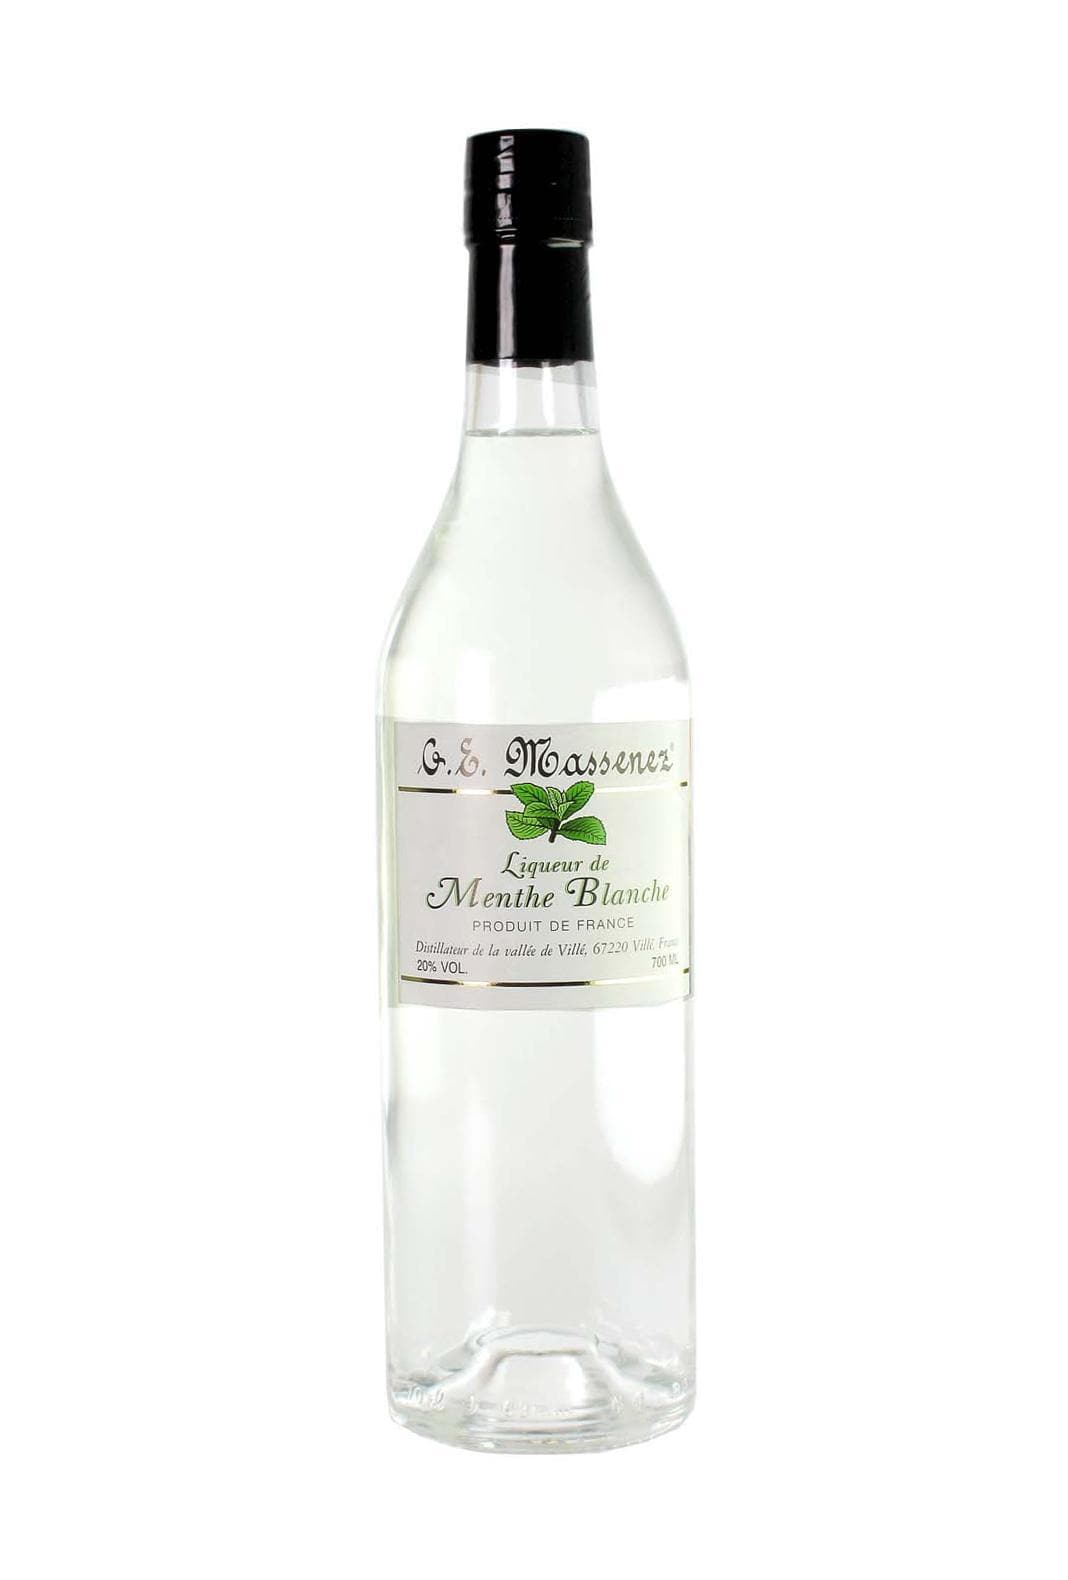 Massenez Liqueur de Menthe Blanche (White Mint) 20% 700ml | Liqueurs | Shop online at Spirits of France